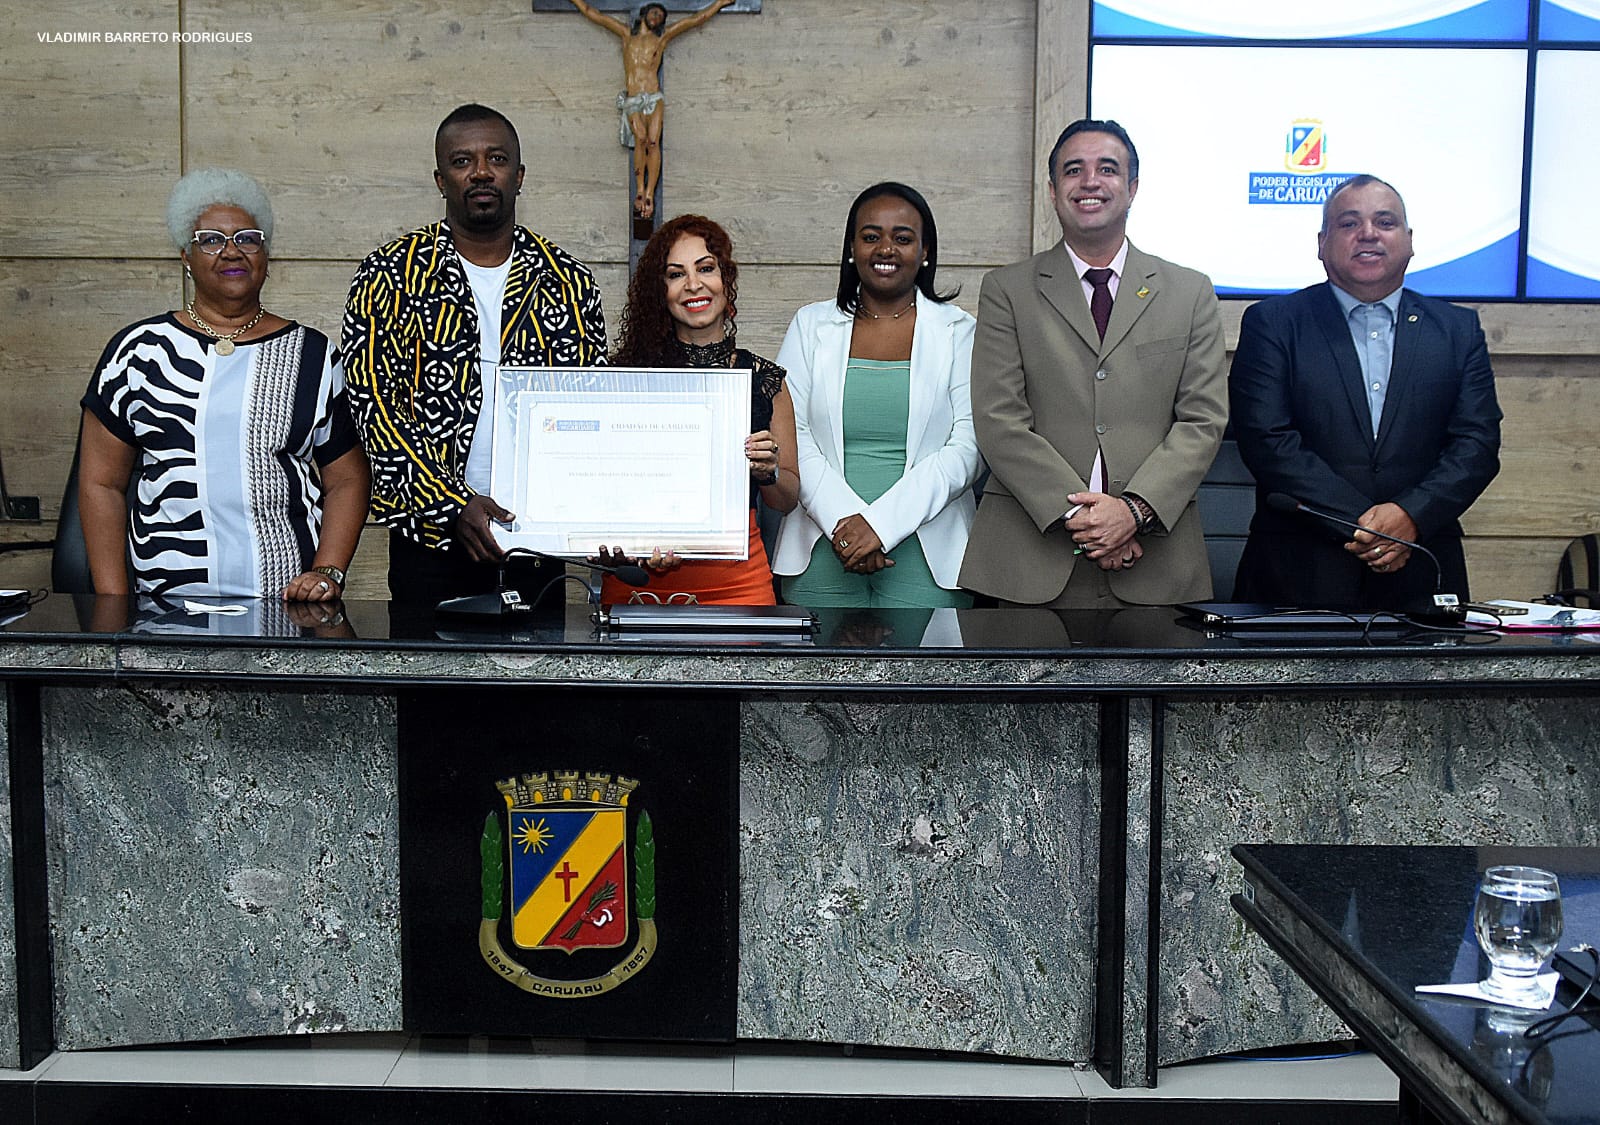 Arte-educador baiano se torna cidadão caruaruense em Sessão Solene da Câmara Municipal de Caruaru